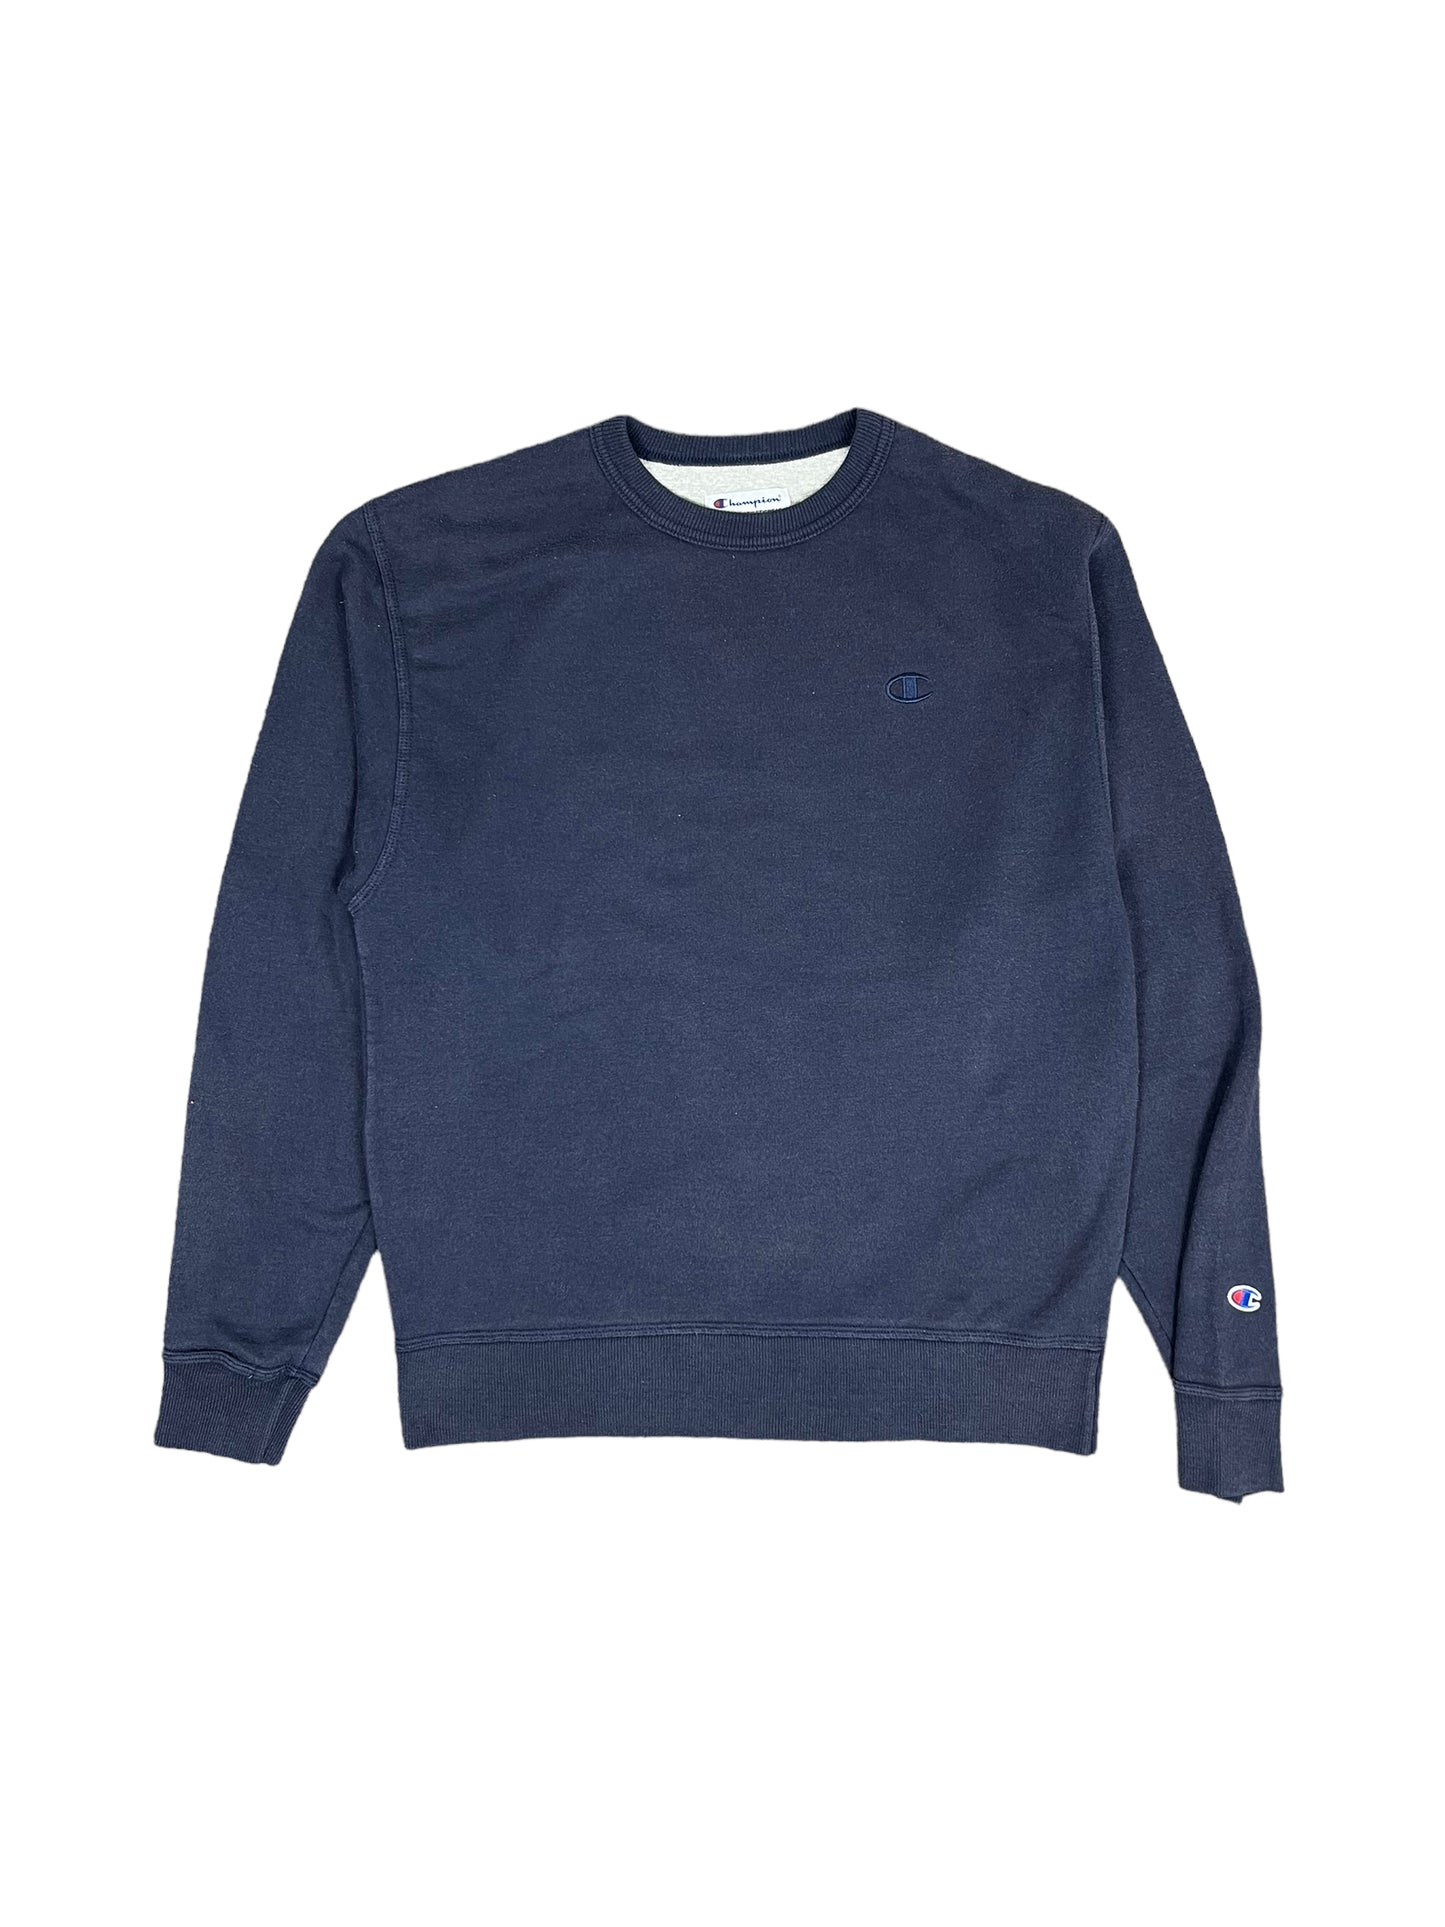 Vintage 00’s Champion Sweatshirt - Medium